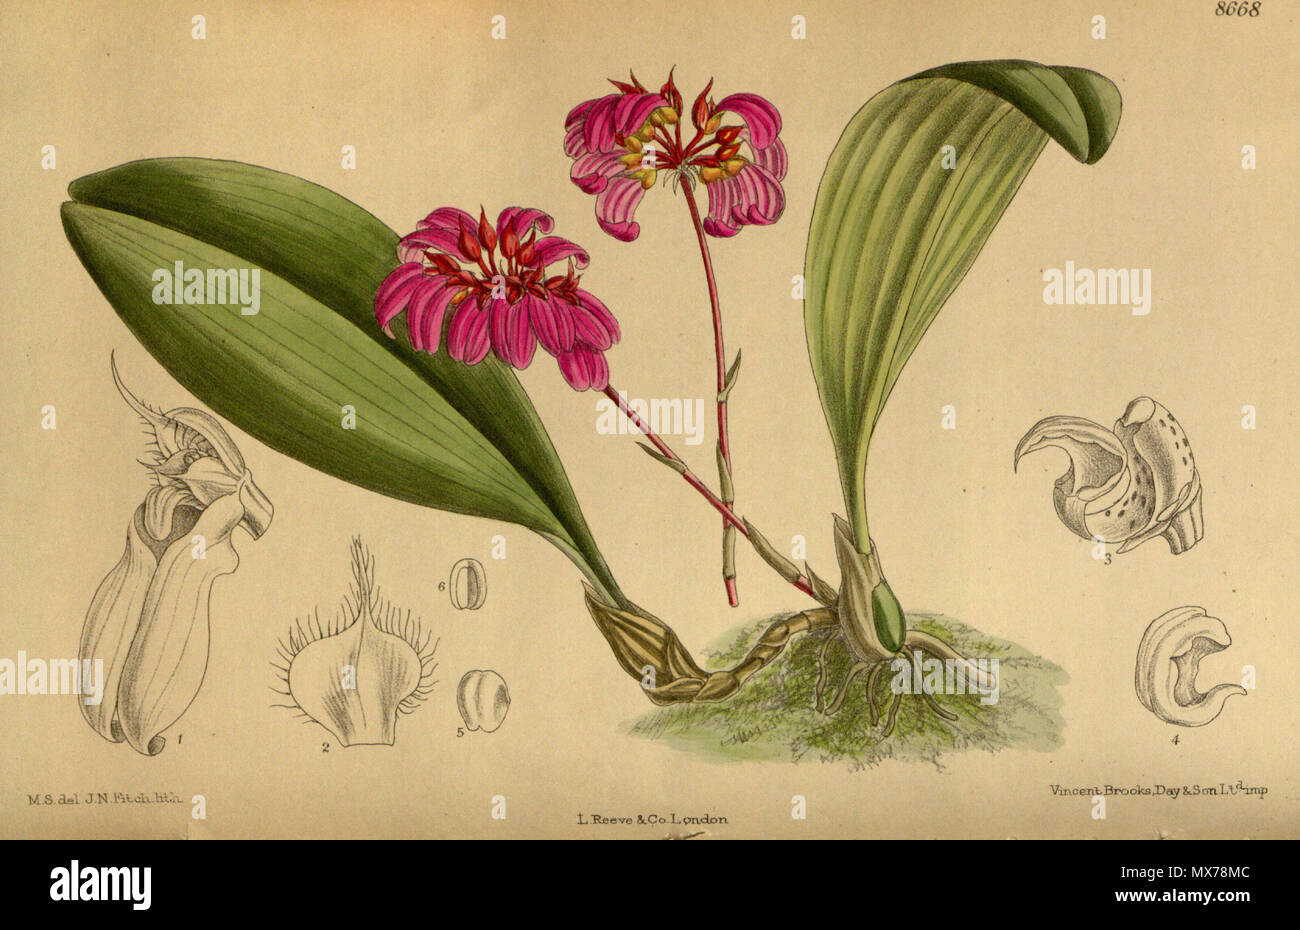 . Cirrhopetalum concinnum var. purpurea (= Bulbophyllum corolliferum), Orchidaceae . 1916. M.S. del., J.N.Fitch lith. 132 Cirrhopetalum concinnum purpurea 142-8668 Stock Photo